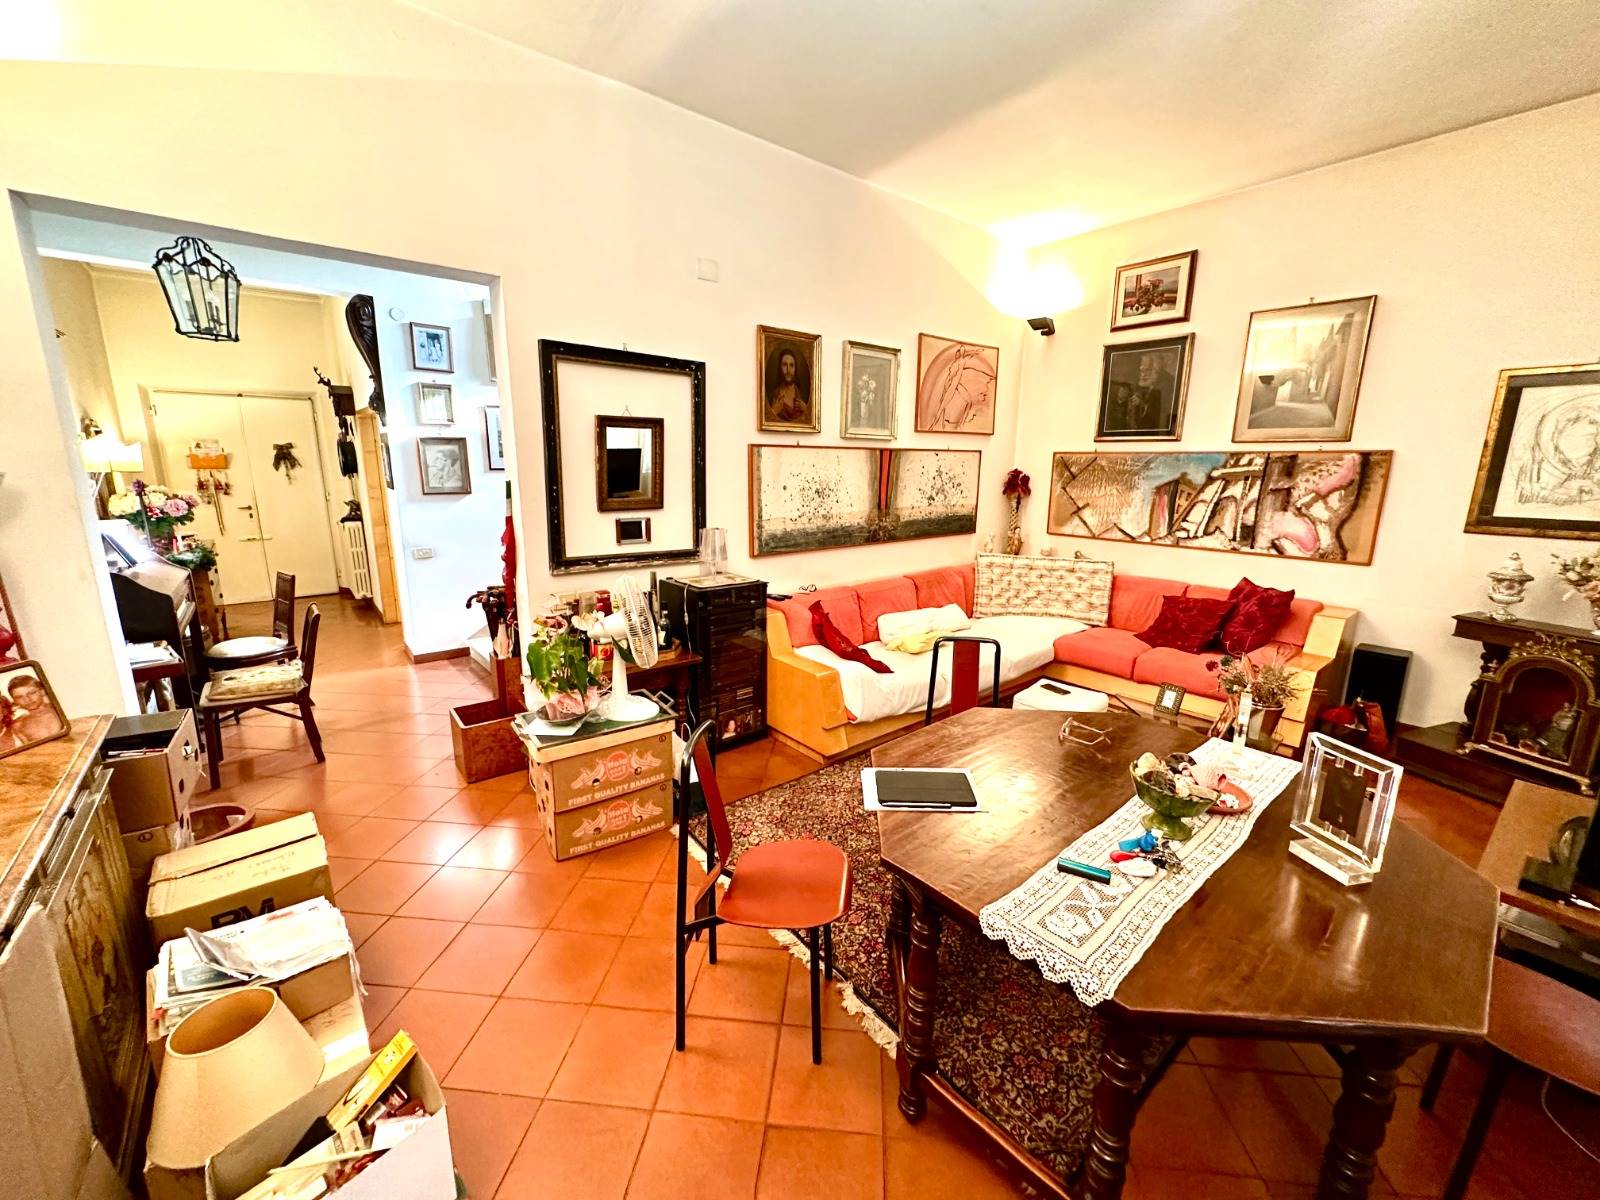 Appartamento in vendita a Firenze - Zona: 14 . Sorgane, La Rondinella, Bellariva, Gavinana, Firenze Sud, Europa